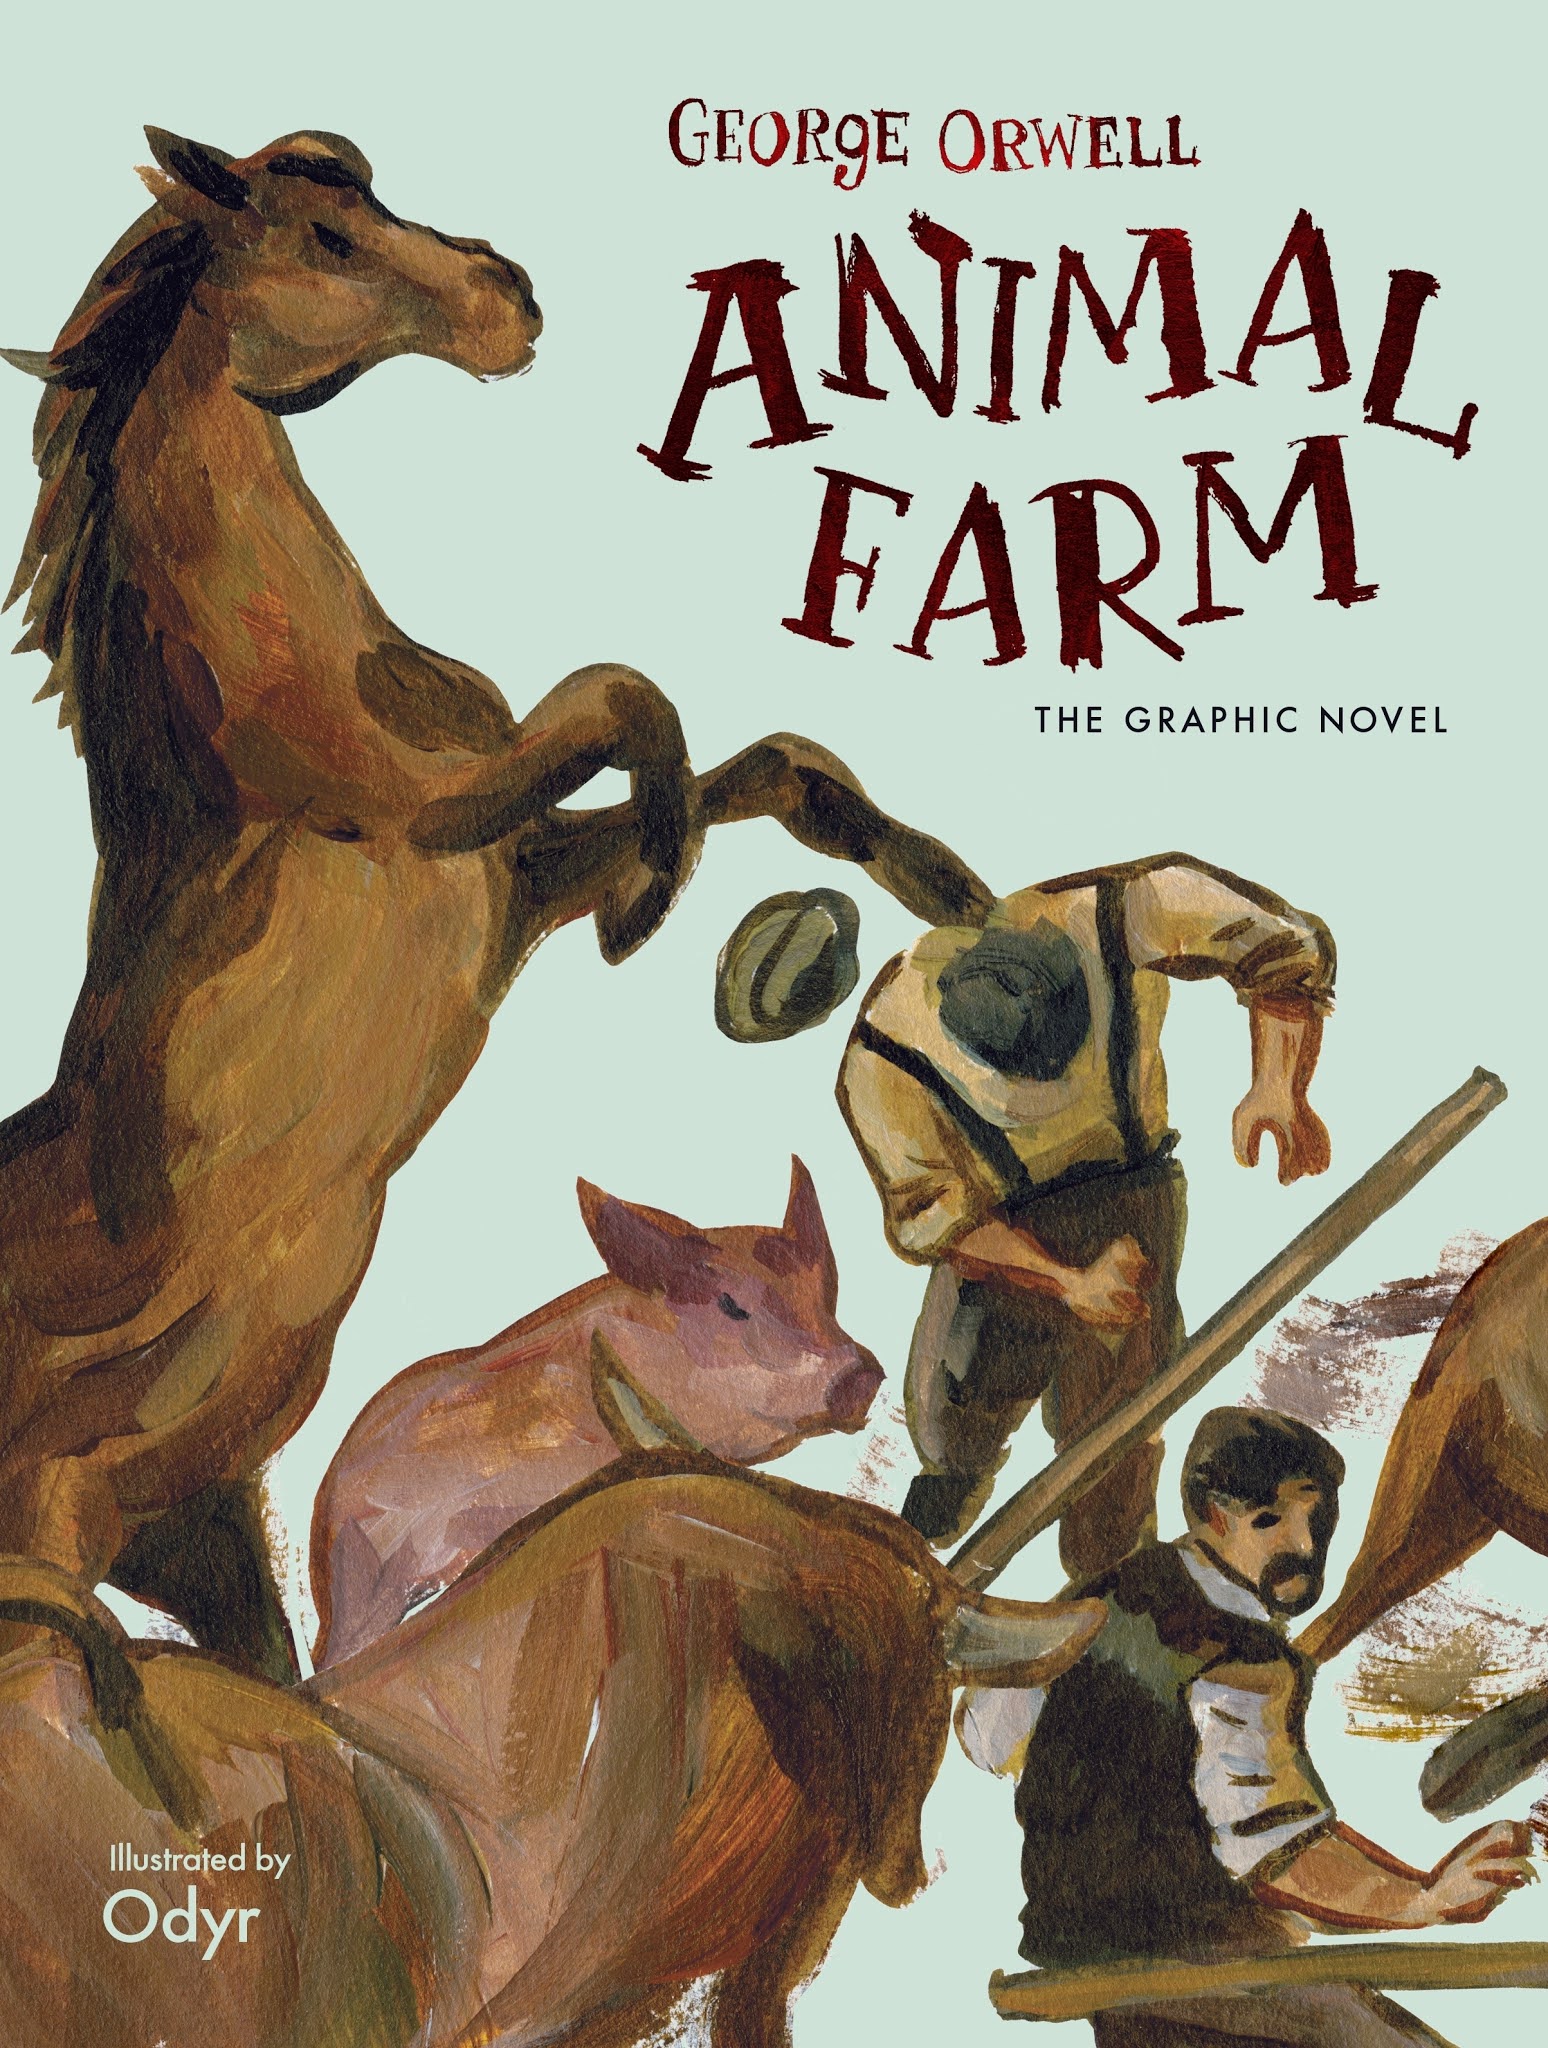 summary on animal farm by george orwell